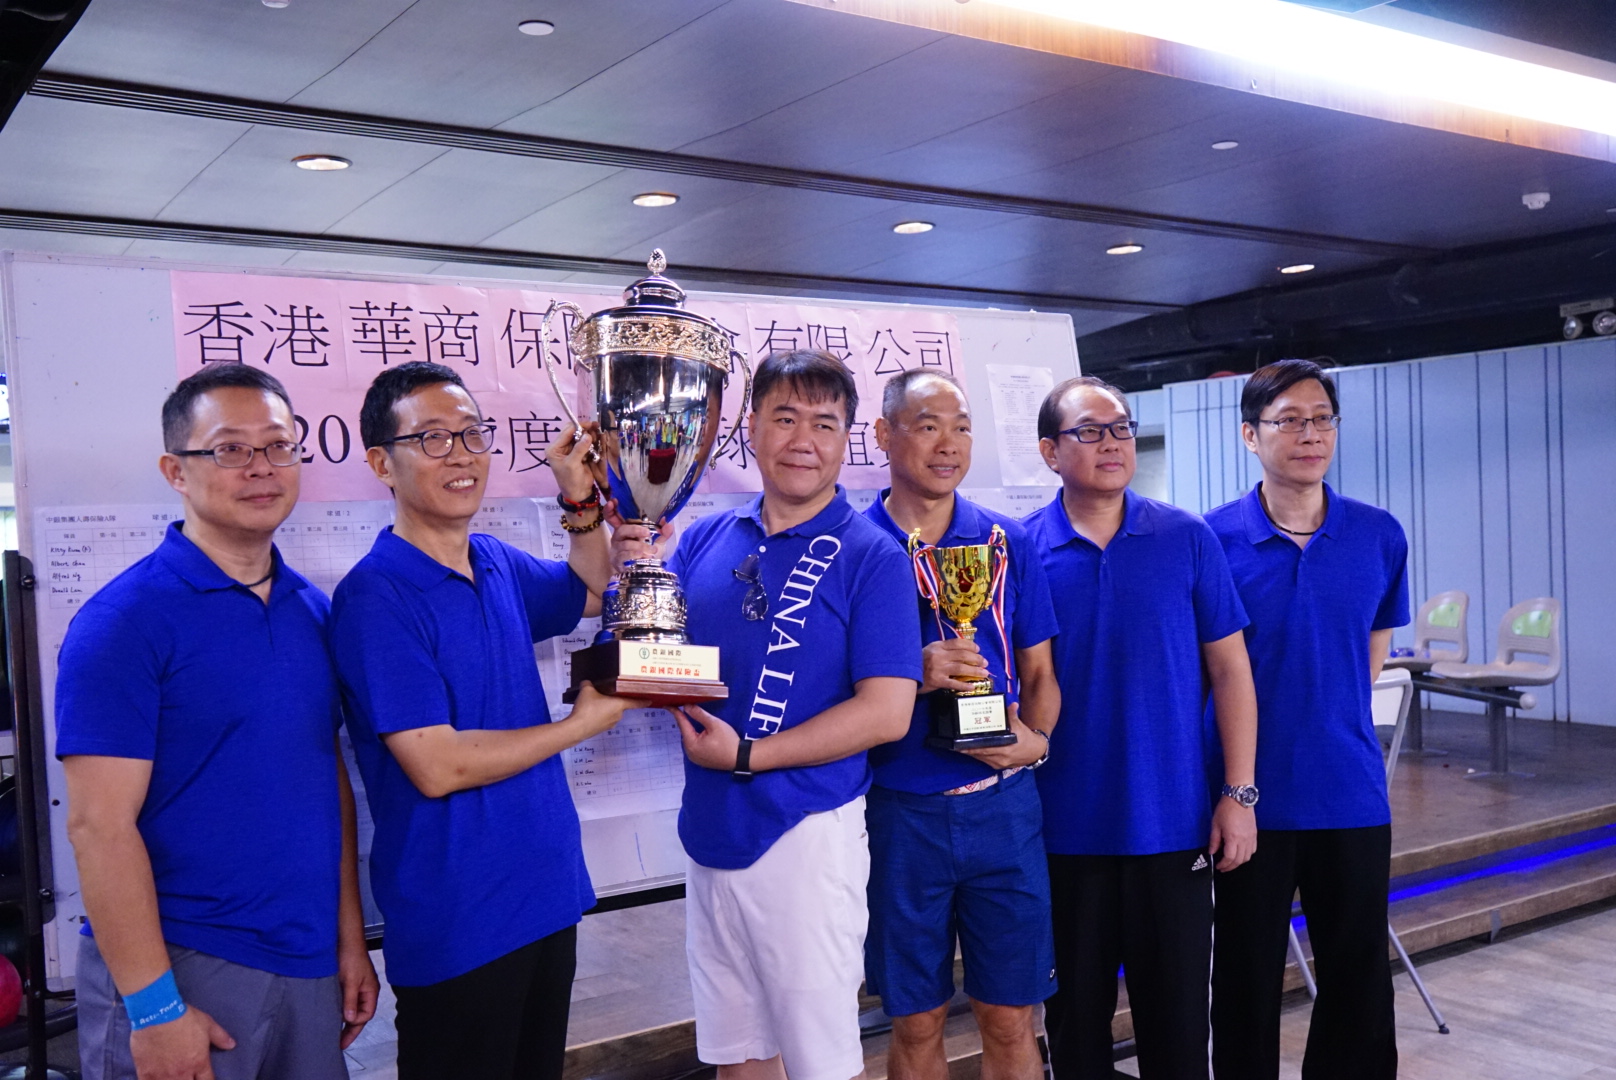 中国人寿（海外）参赛队伍於「2017年度保龄球友谊比赛」夺得全场季军